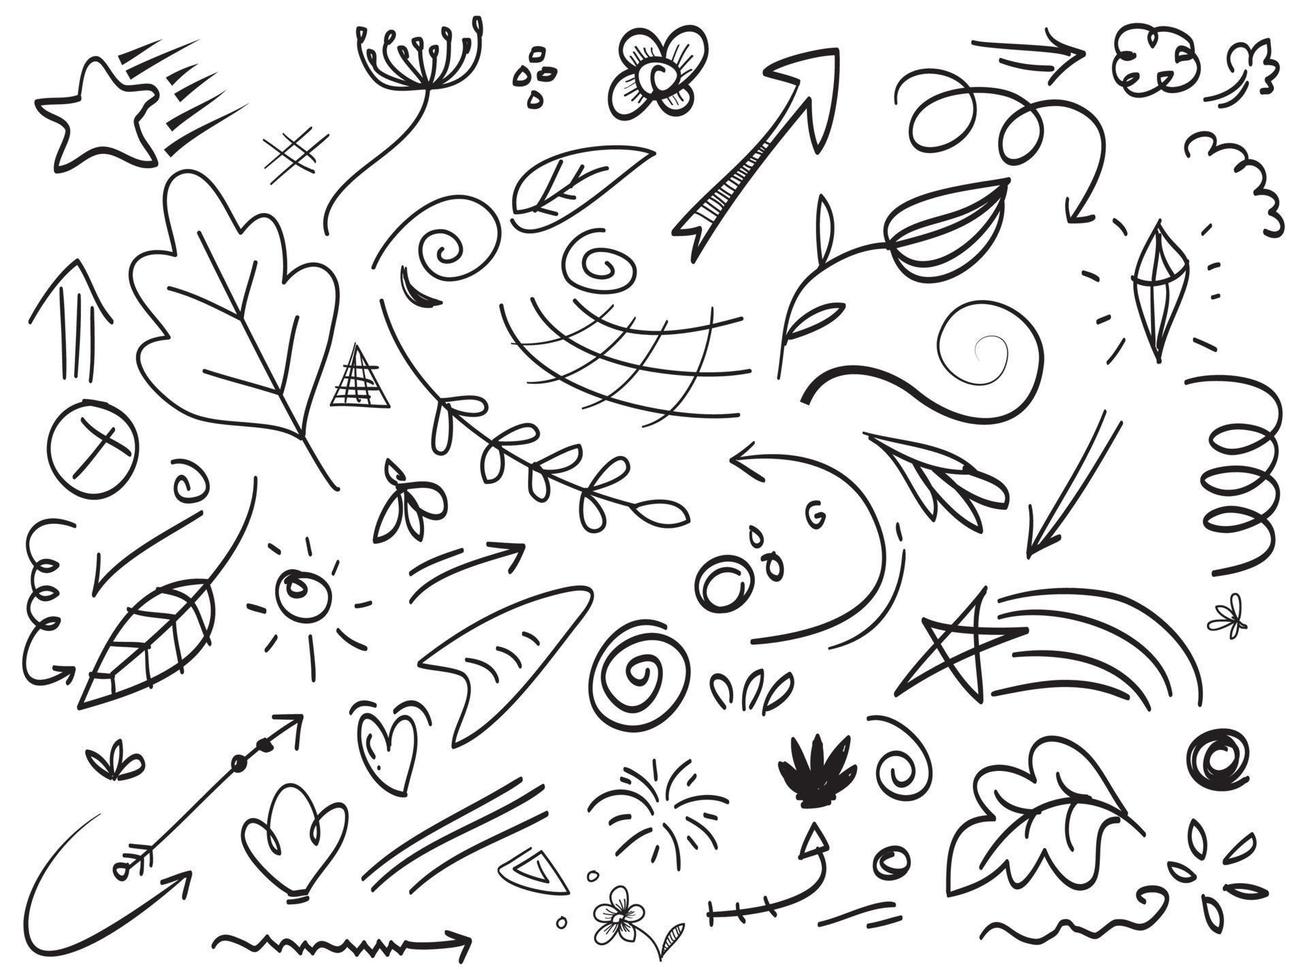 rabiscos folha abstrata, coração, setas, estrela e outros elementos desenhados à mão estilo para design de conceito. ilustração vetorial de rabiscos vetor